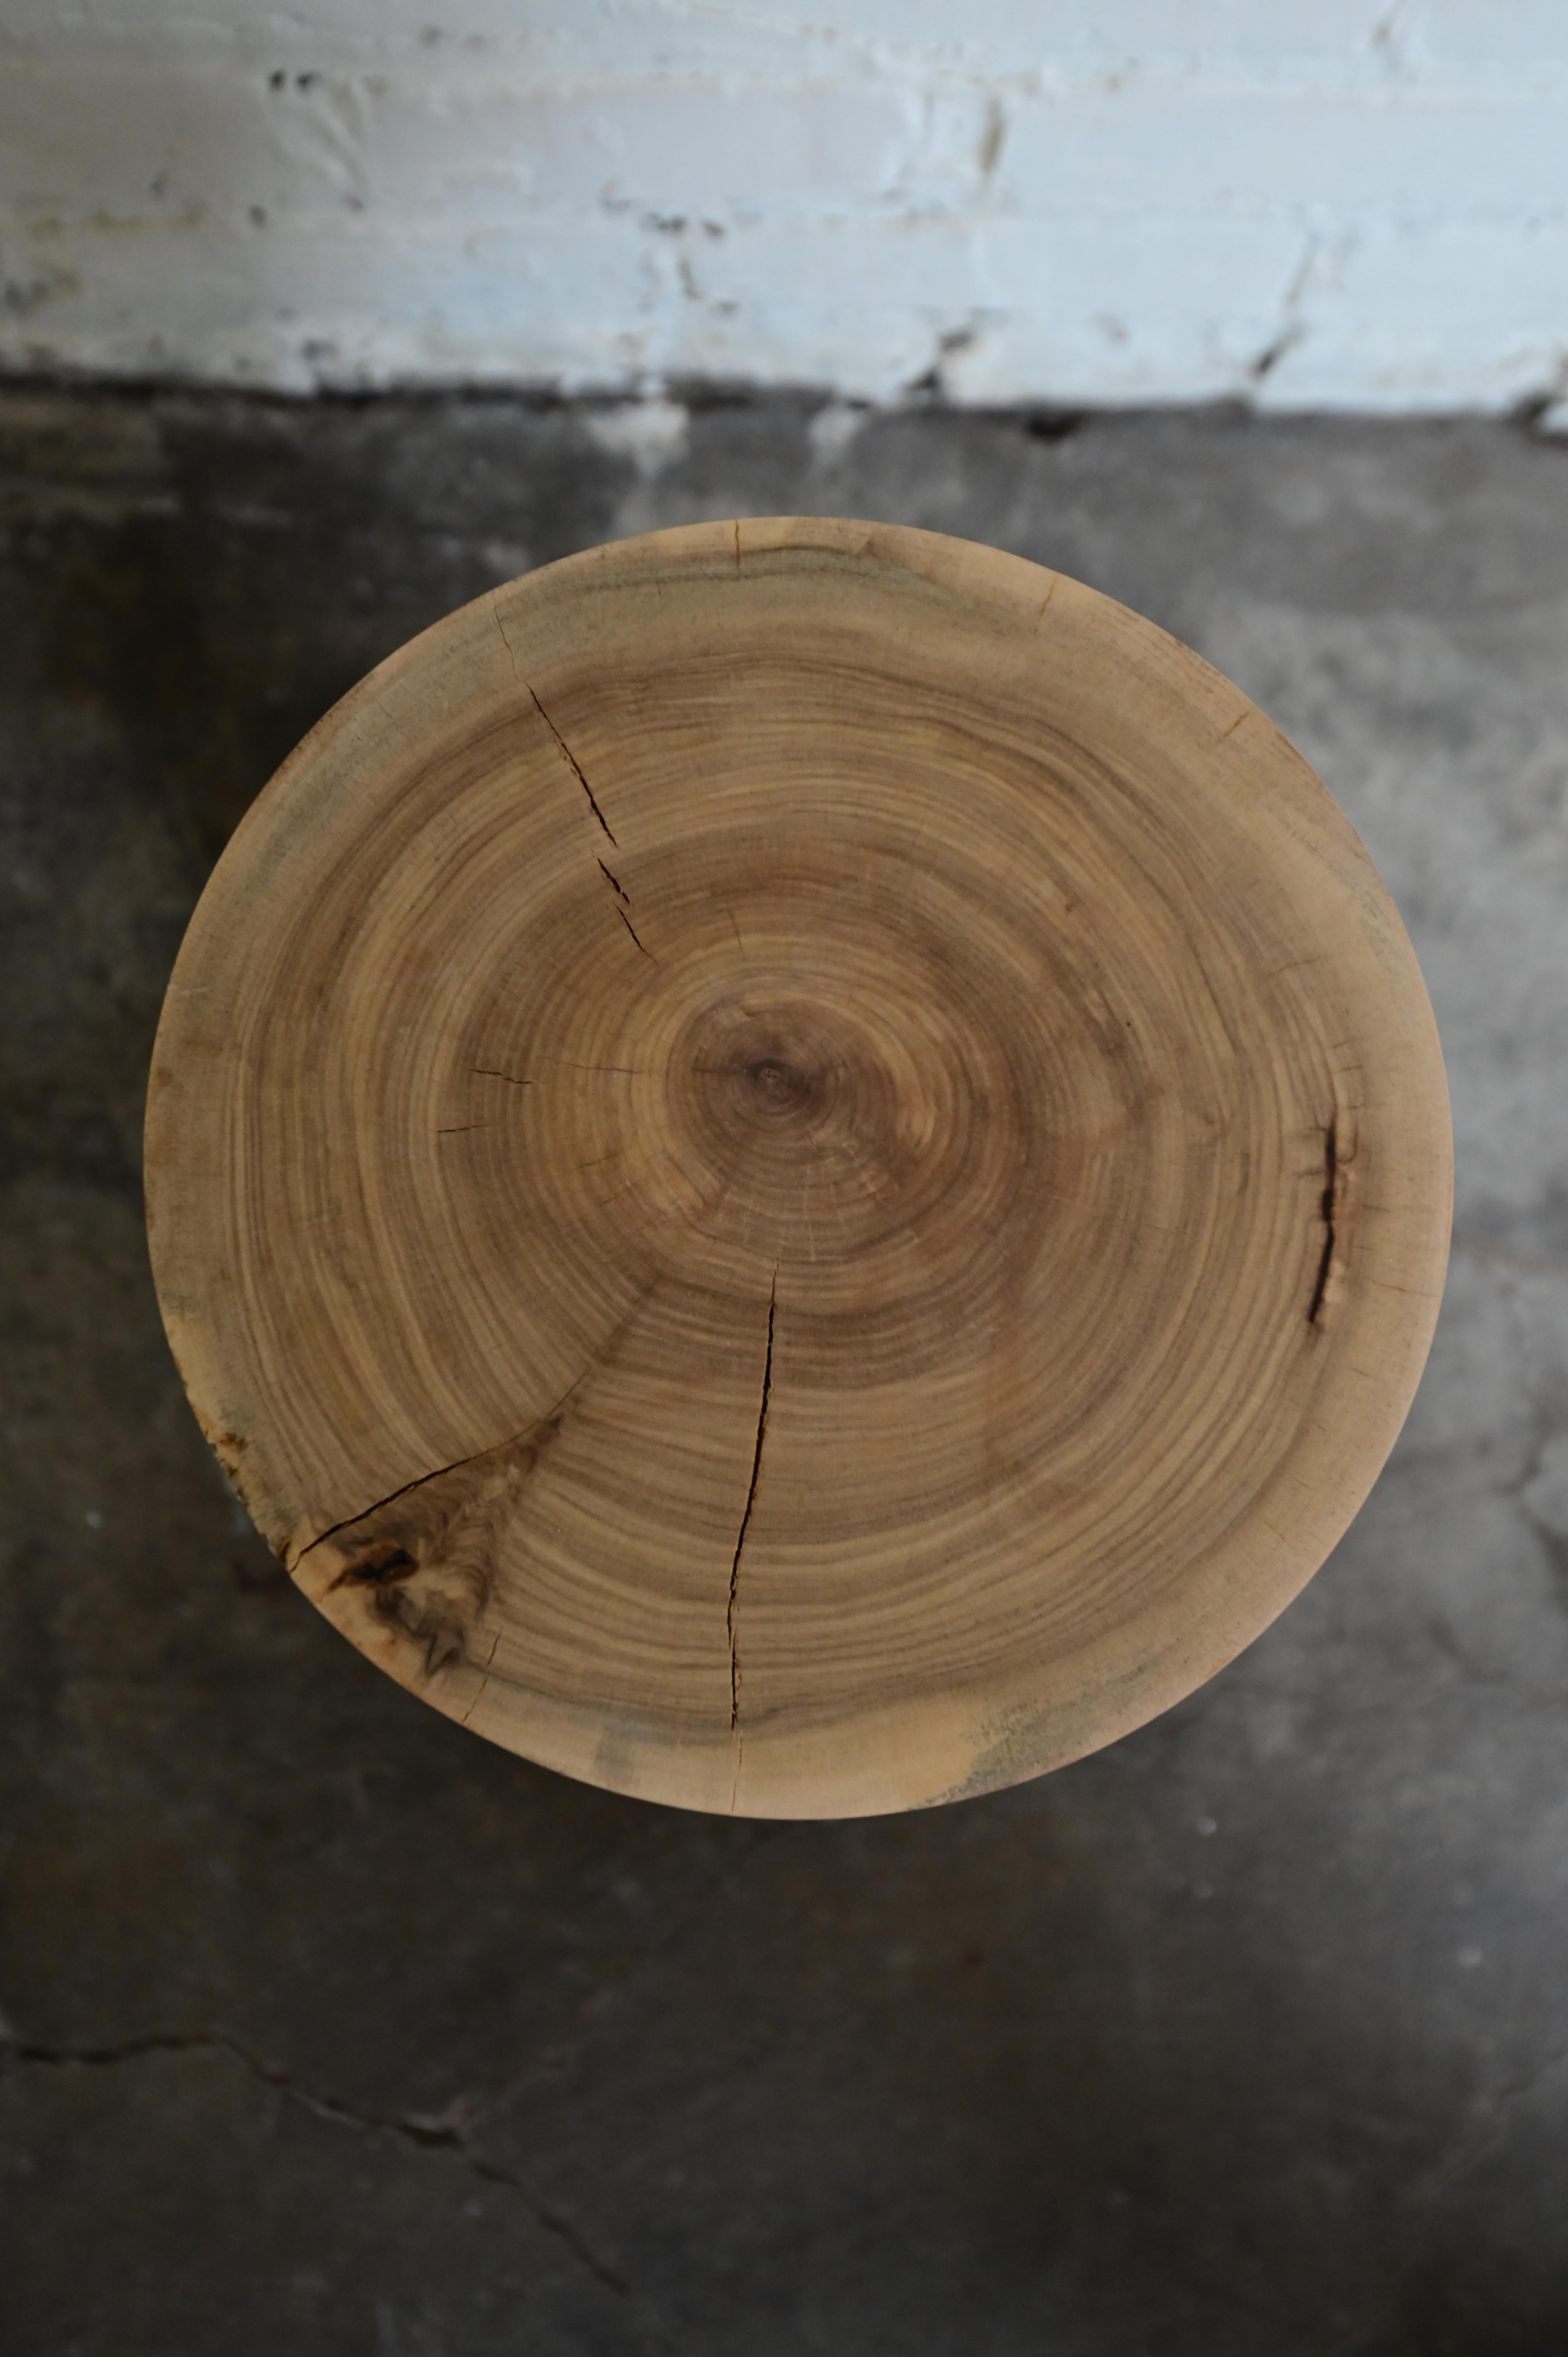 Table d'appoint en bois unique, sculptée à la main. Sculptée en bois massif, elle mesure 16 pouces de haut et 9 pouces de diamètre en haut et en bas. La pièce est fabriquée à partir de matériaux naturels, de sorte que de petites fissures et des